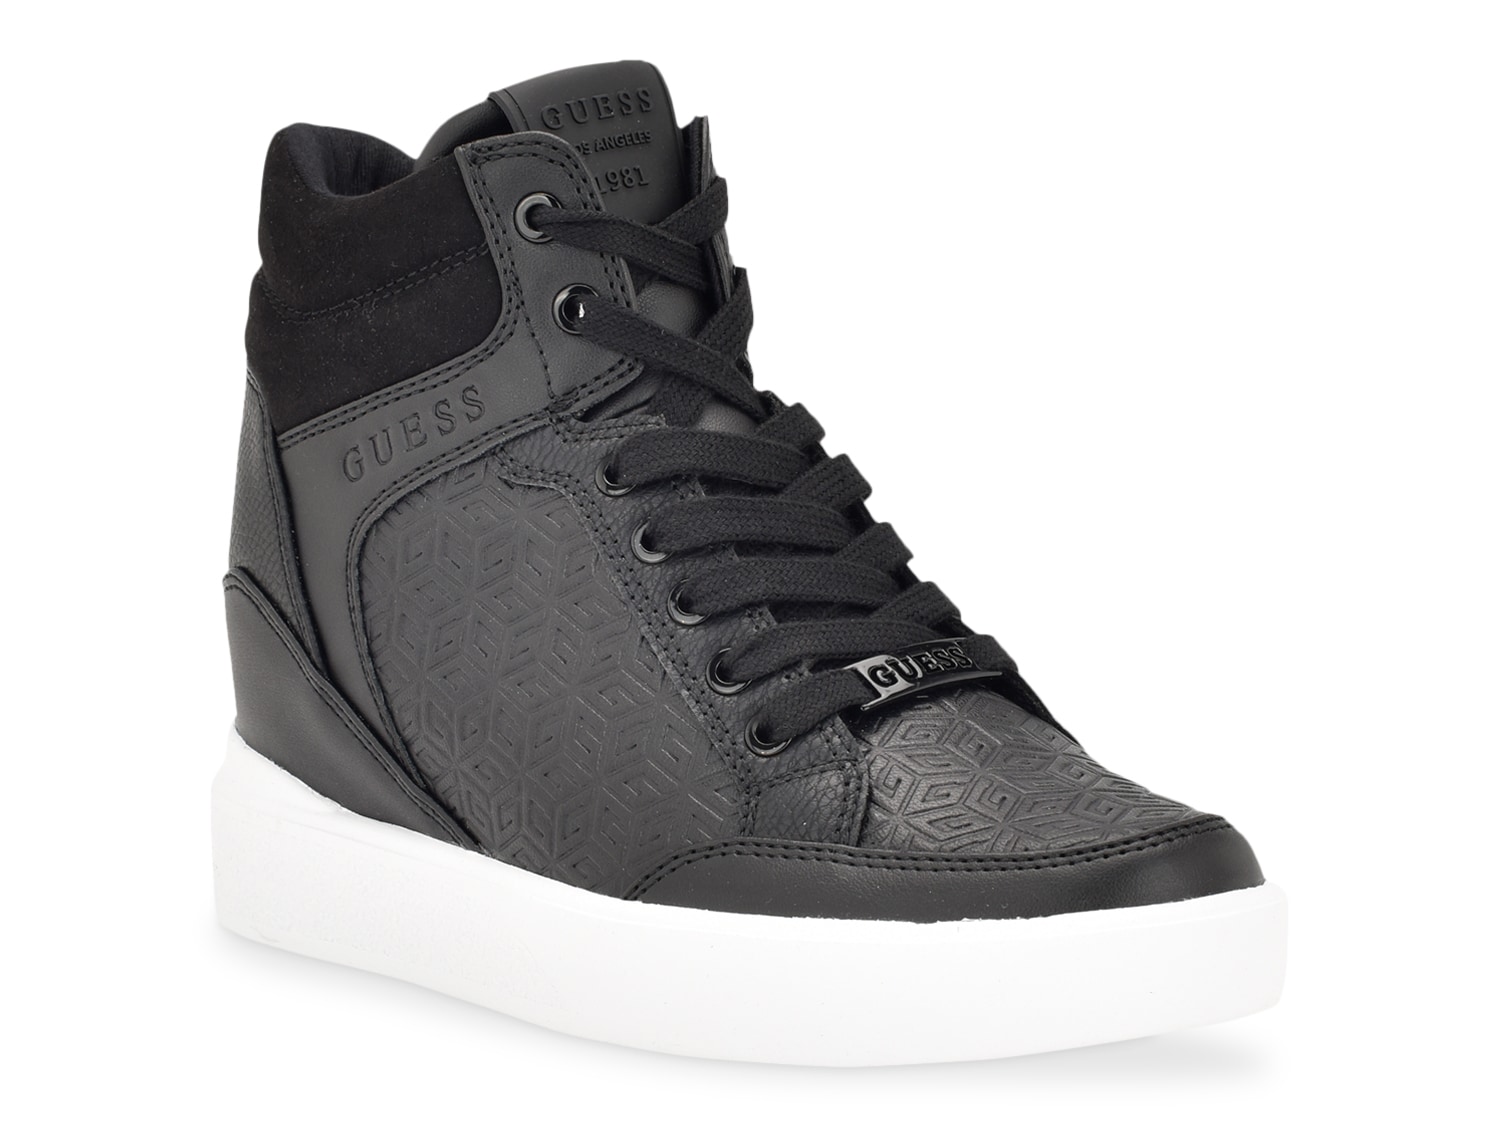 Guess Blairin Sneaker - Shipping | DSW